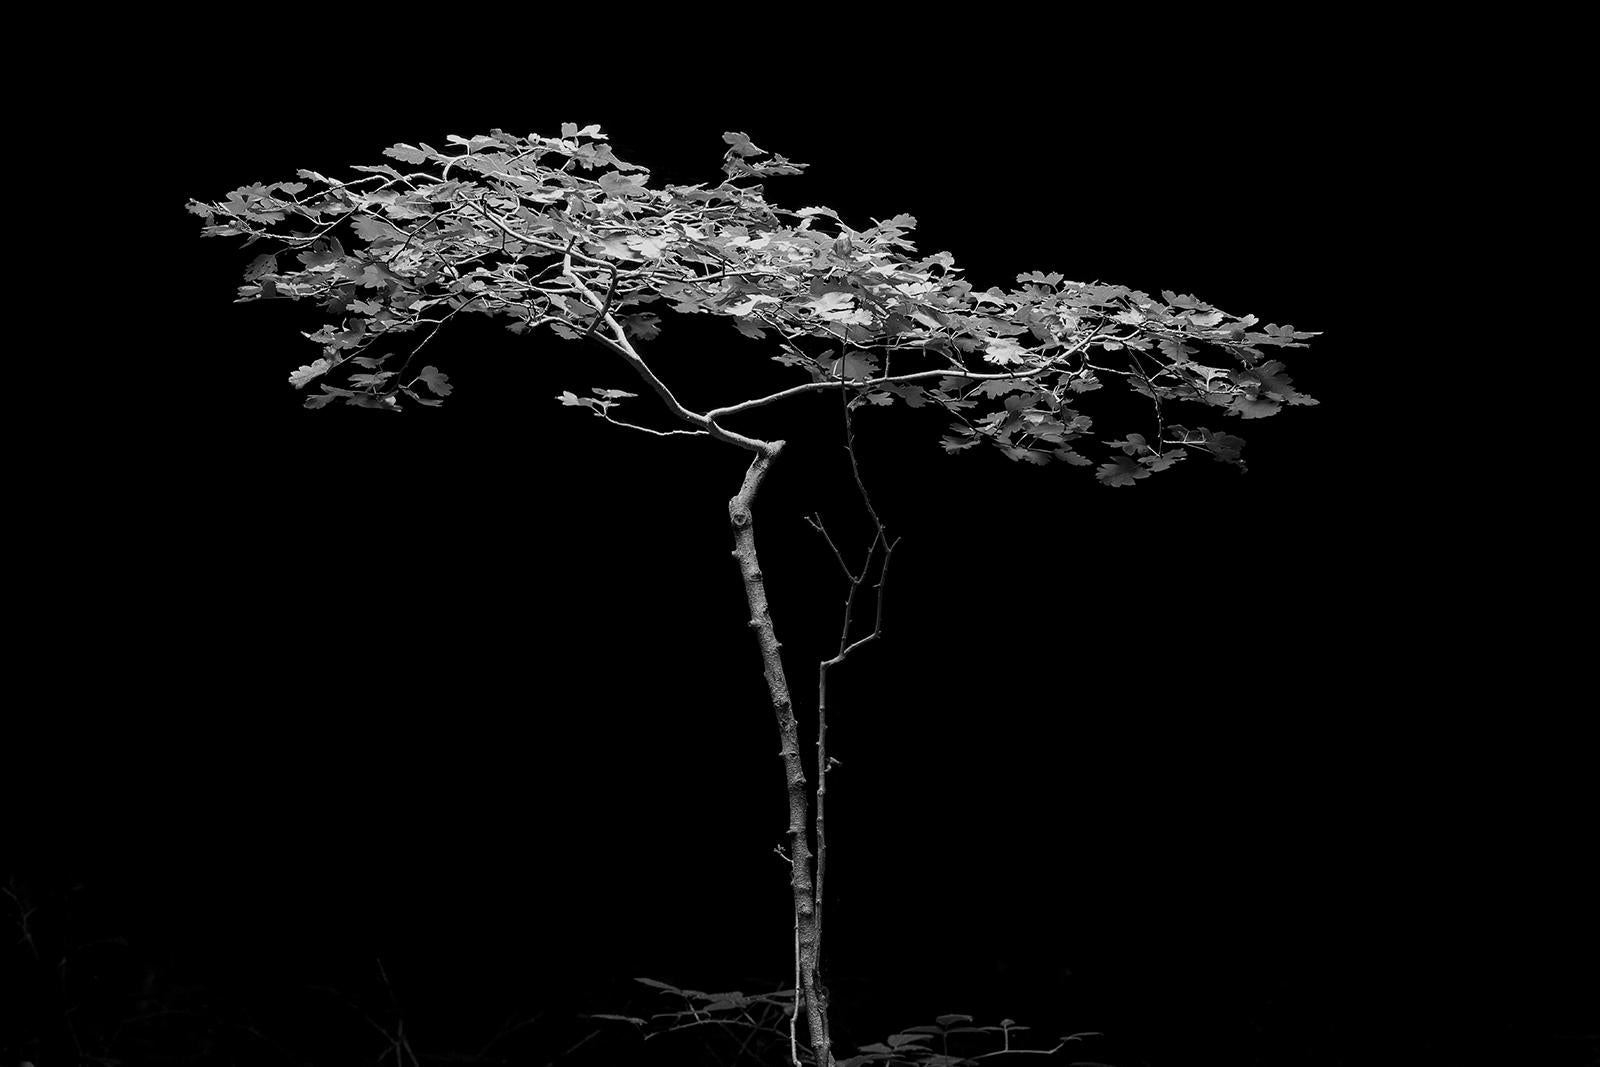 Ian Sanderson Still-Life Photograph – Tree- Signierter Kunstdruck in limitierter Auflage, Schwarz  Weiß Natur Foto, Still